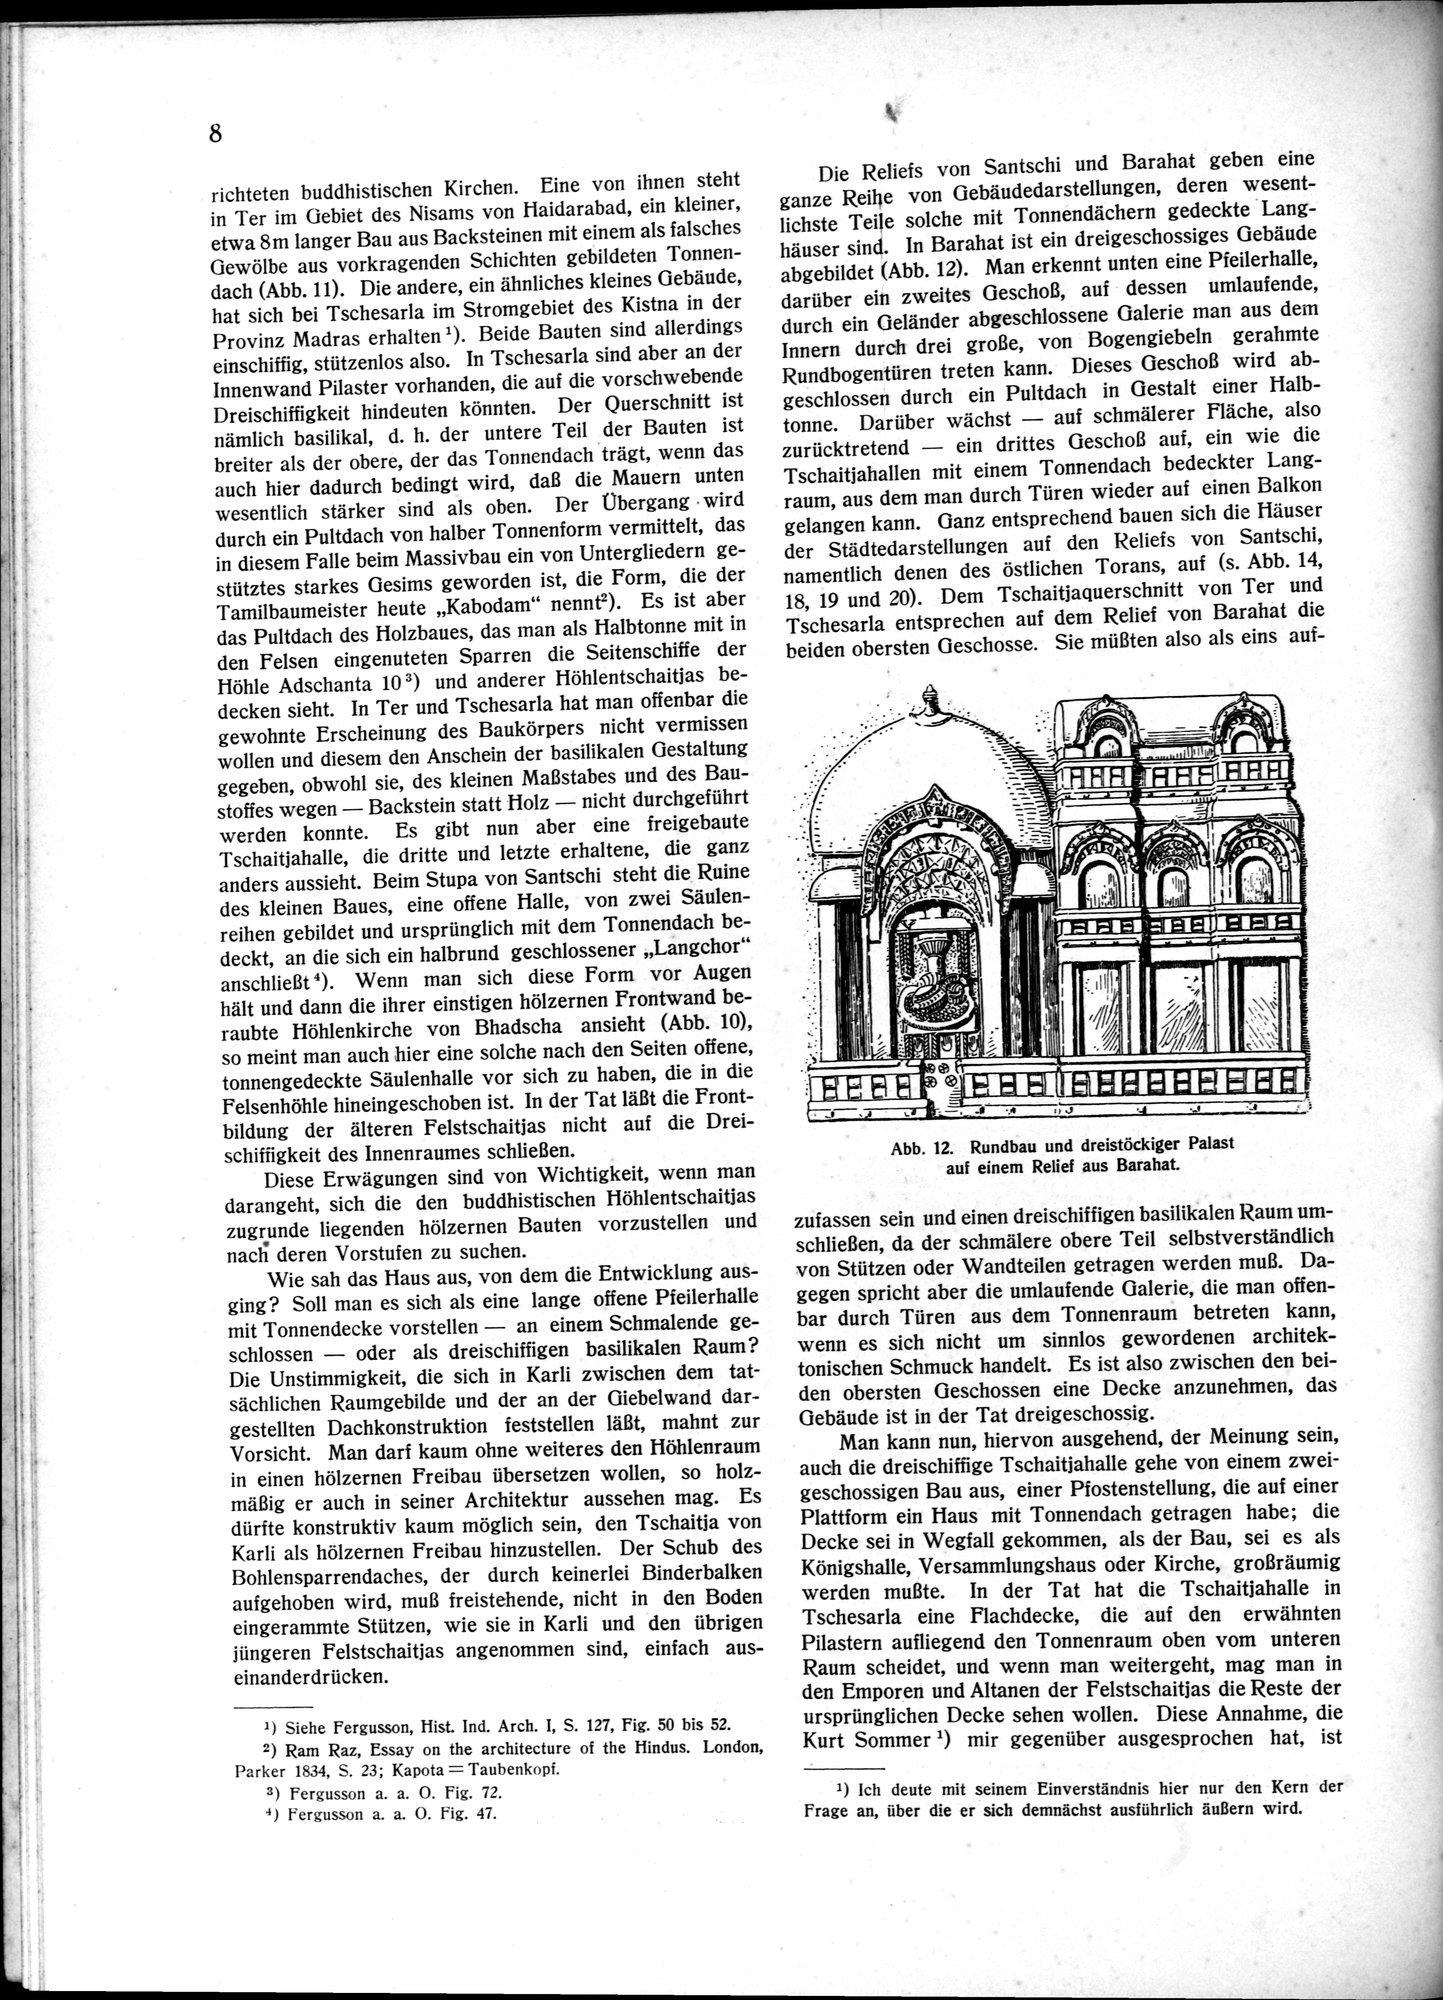 Indische Palaste und Wohnhauser : vol.1 / Page 18 (Grayscale High Resolution Image)